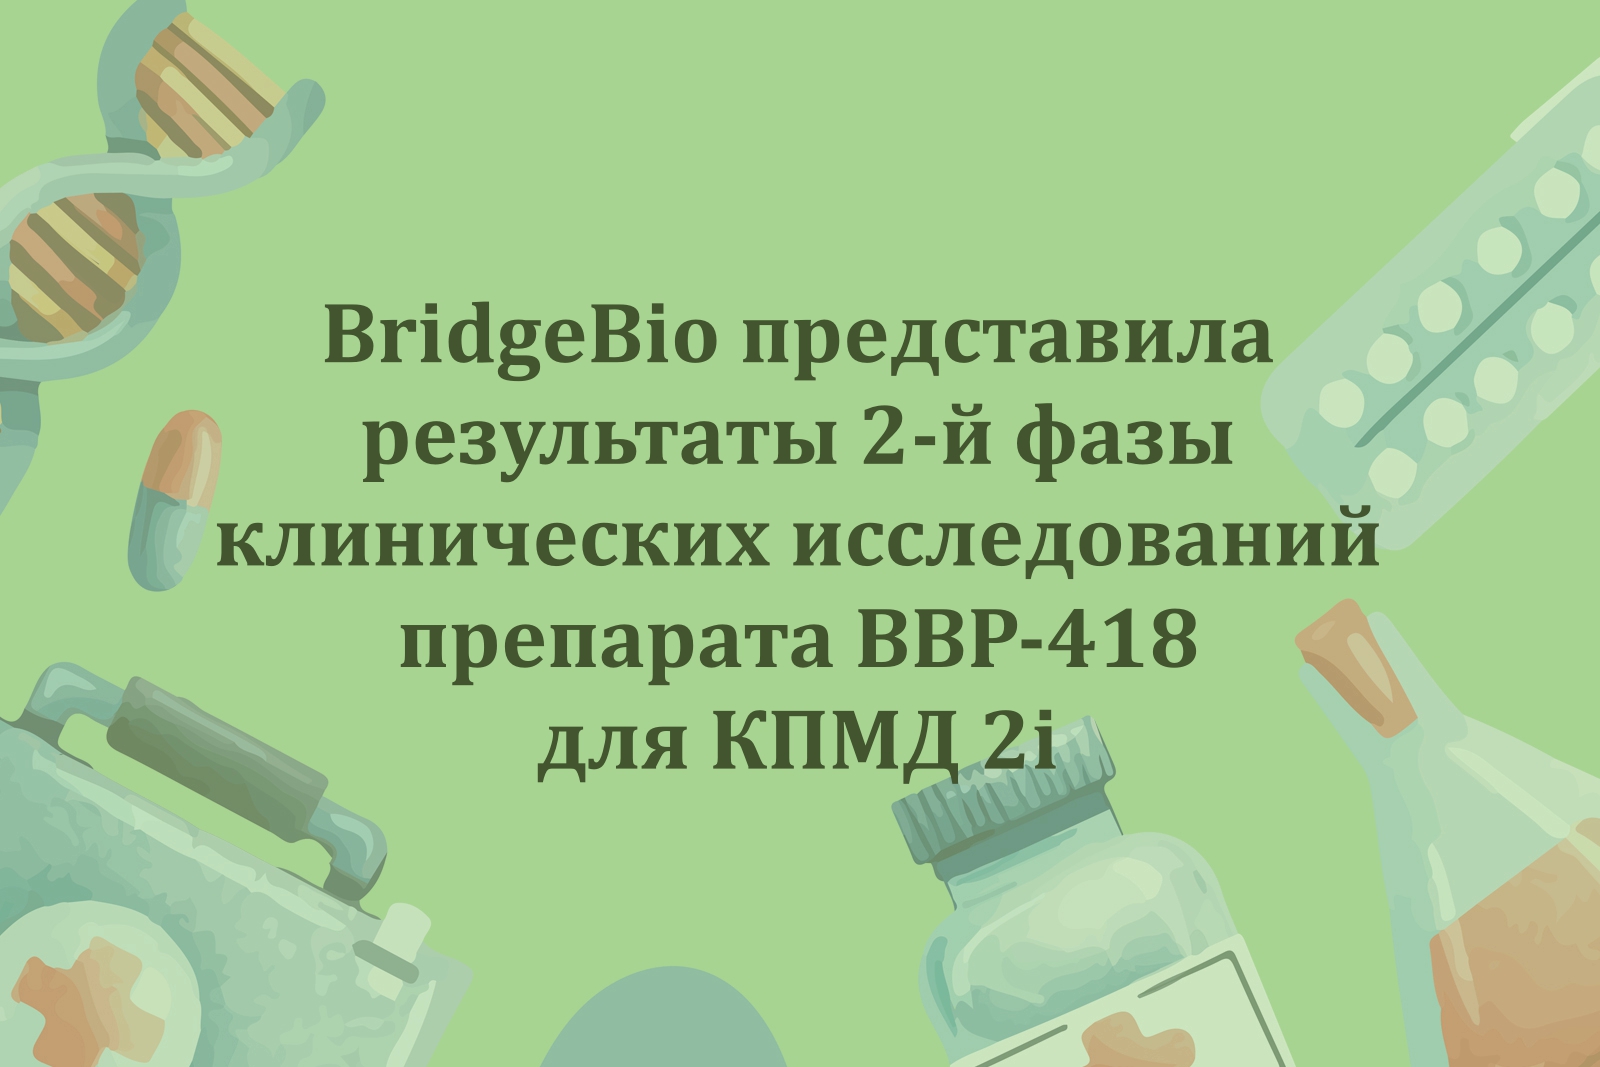 На зелёном фоне по контуру рисунки лекарств. Посередине надпись "BridgeBio представила результаты 2-й фазы клинических исследований препарата BBP-418 для КПМД 2i"